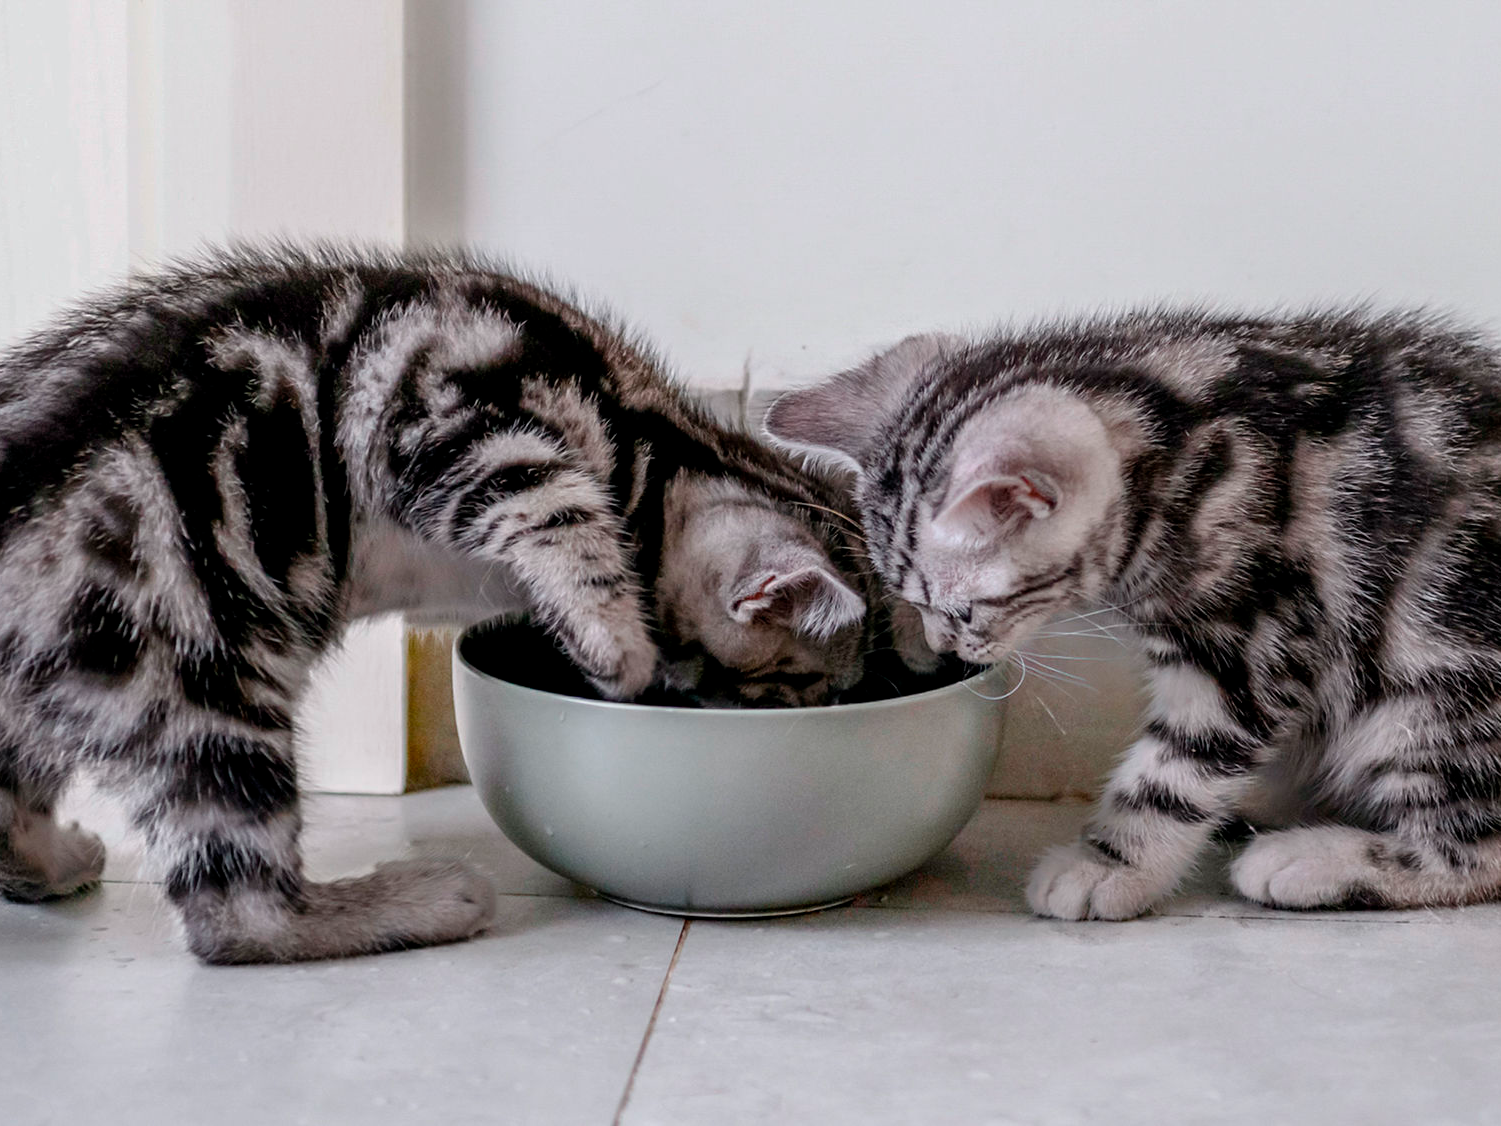 twee kittens eten samen uit een voedingsbakje